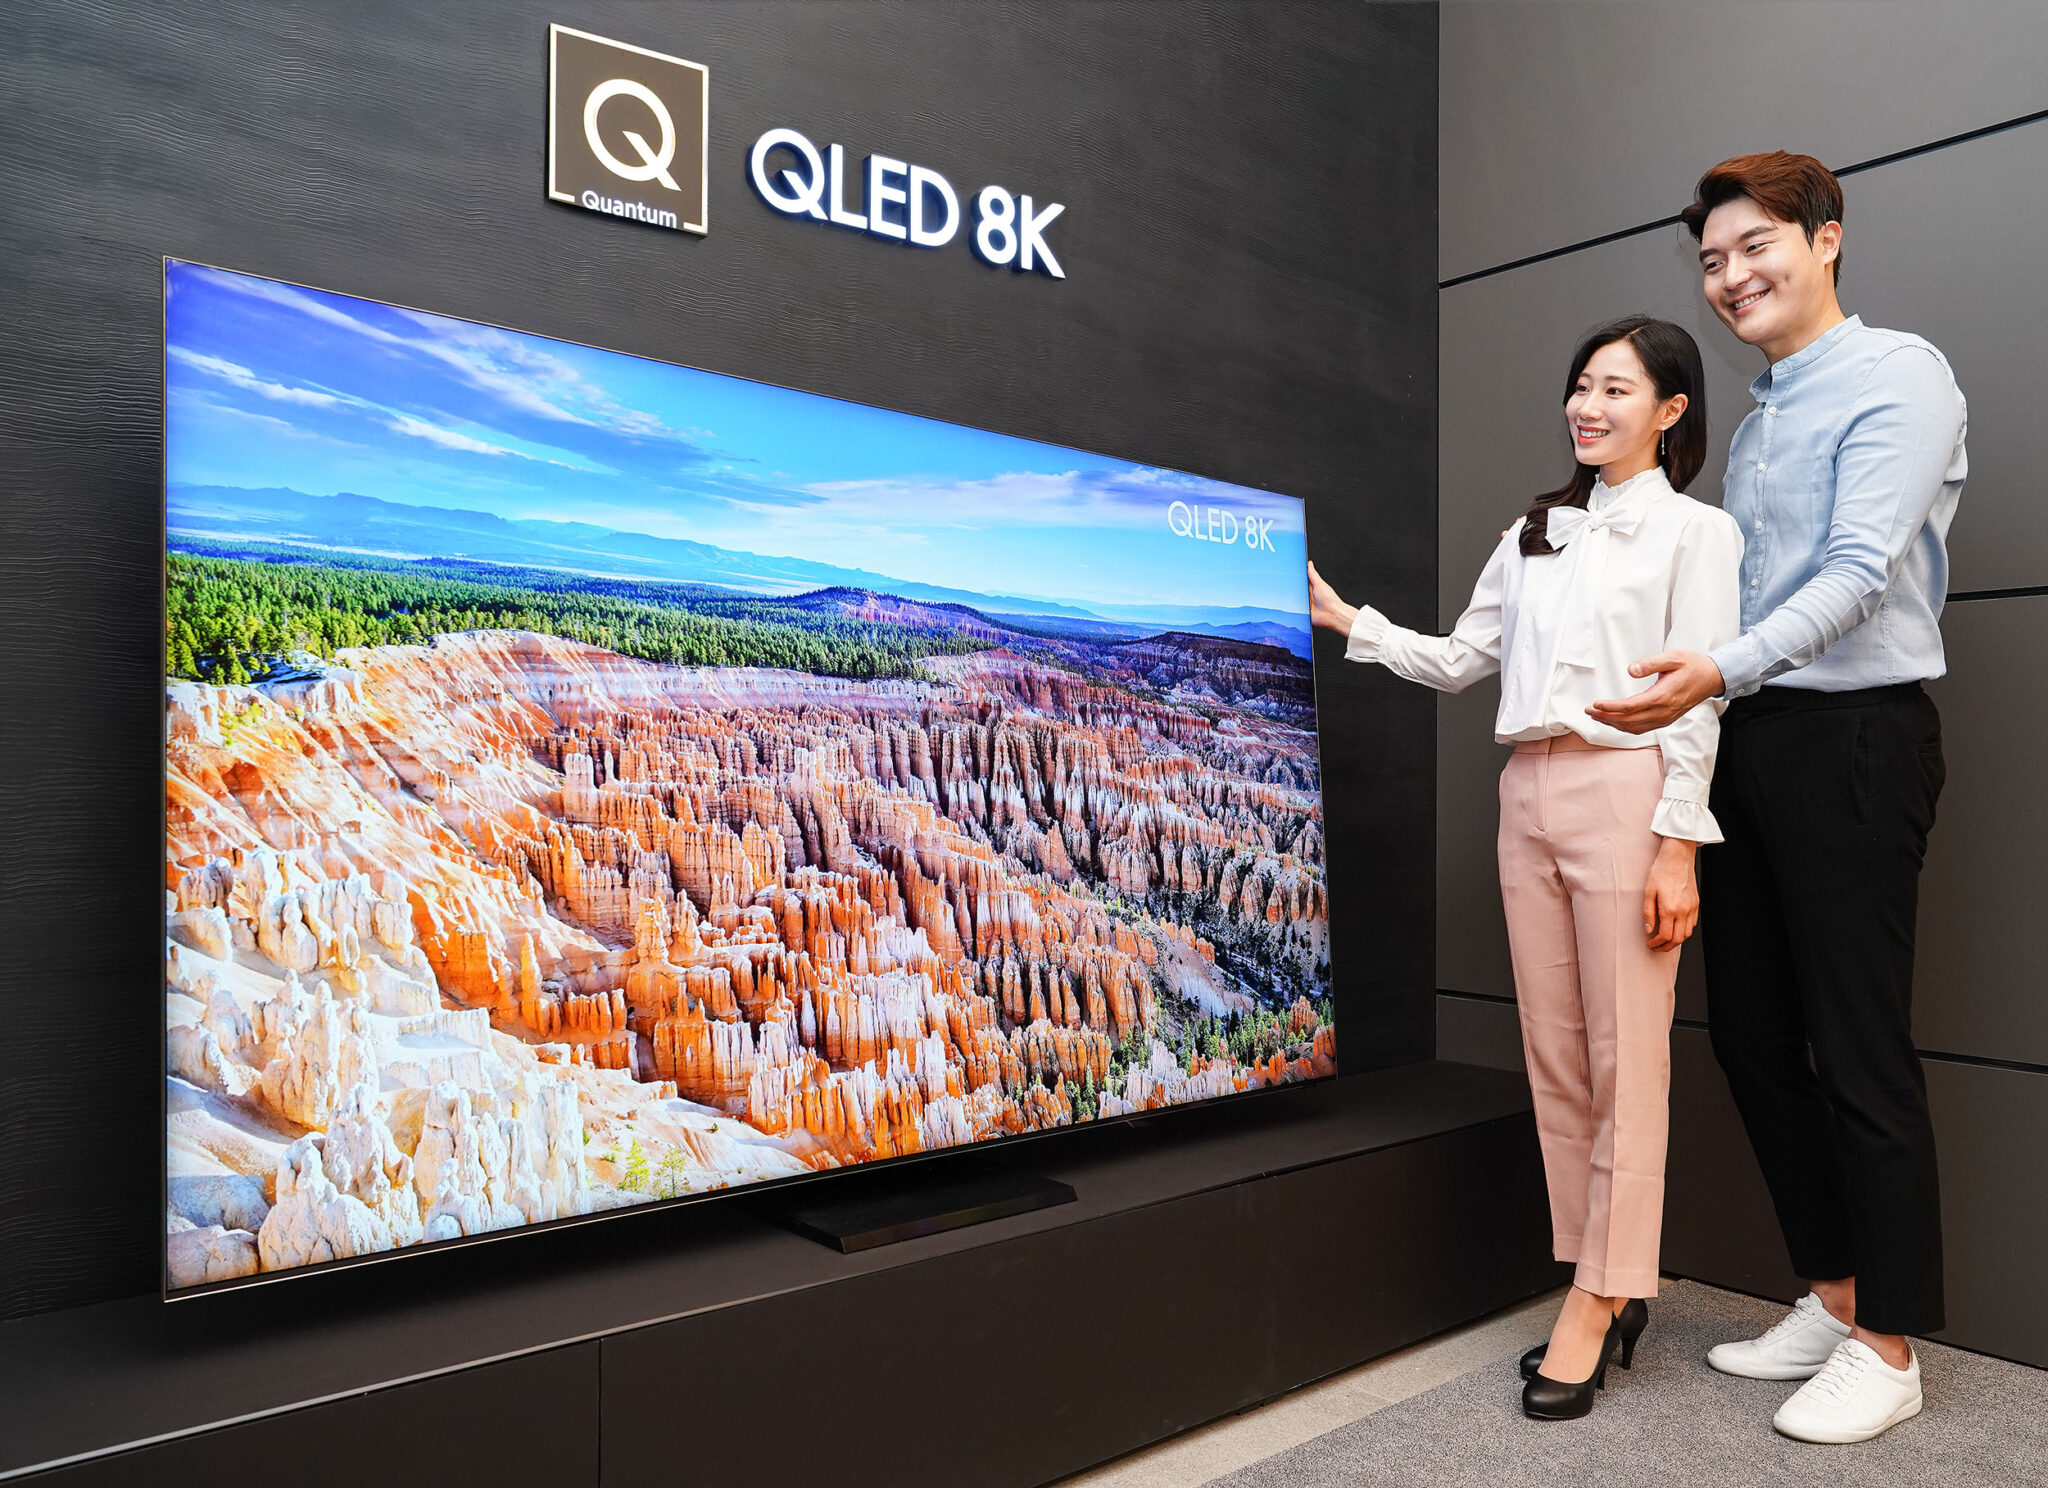 Телевизор qled цены. Телевизор Samsung QLED 8k. Телевизор самсунг QLED 8к. Телевизор Samsung QLED 8k 2020. Samsung QLED 8k 85 дюймов.